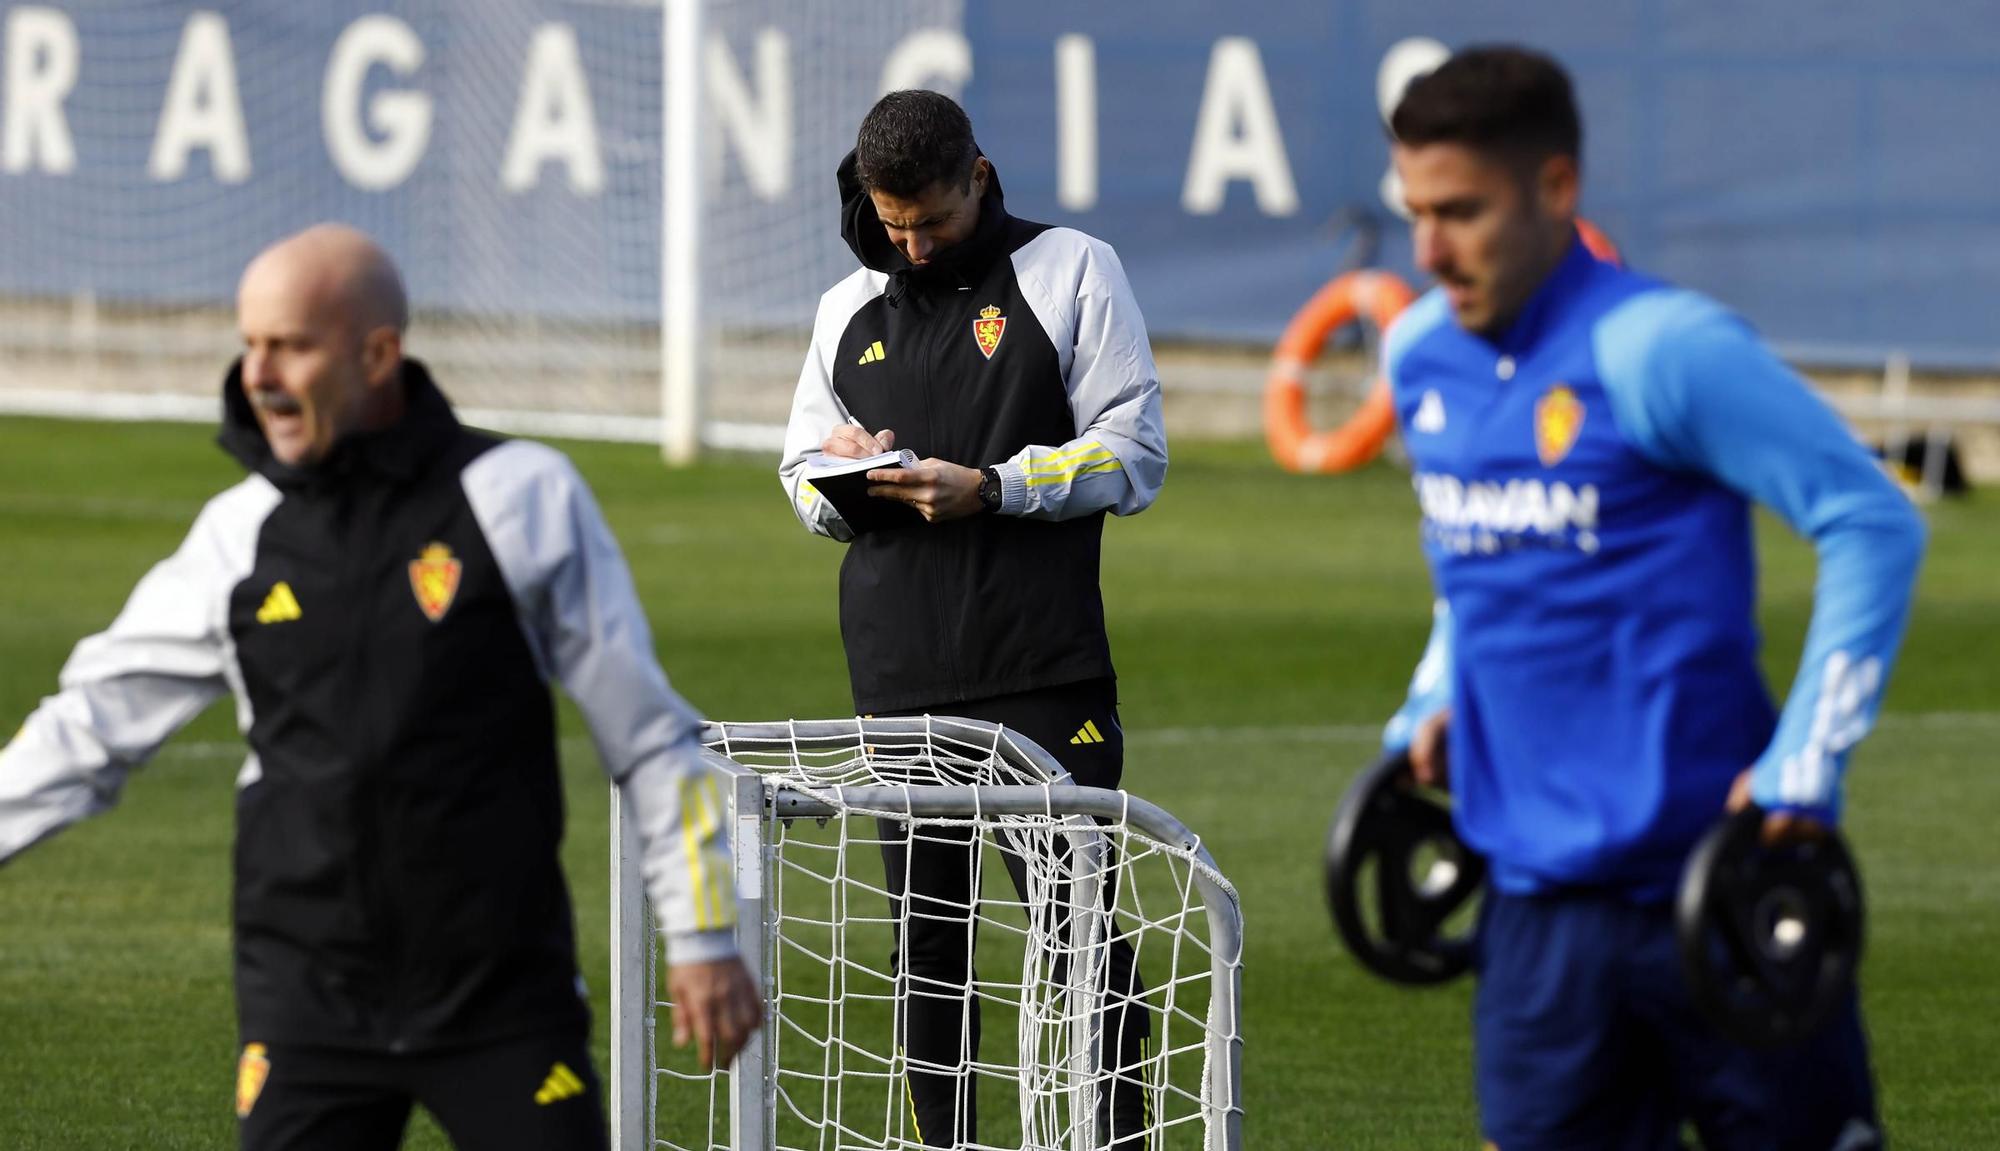 EN IMÁGENES | Así ha sido el primer entrenamiento del Real Zaragoza con Julio Velázquez